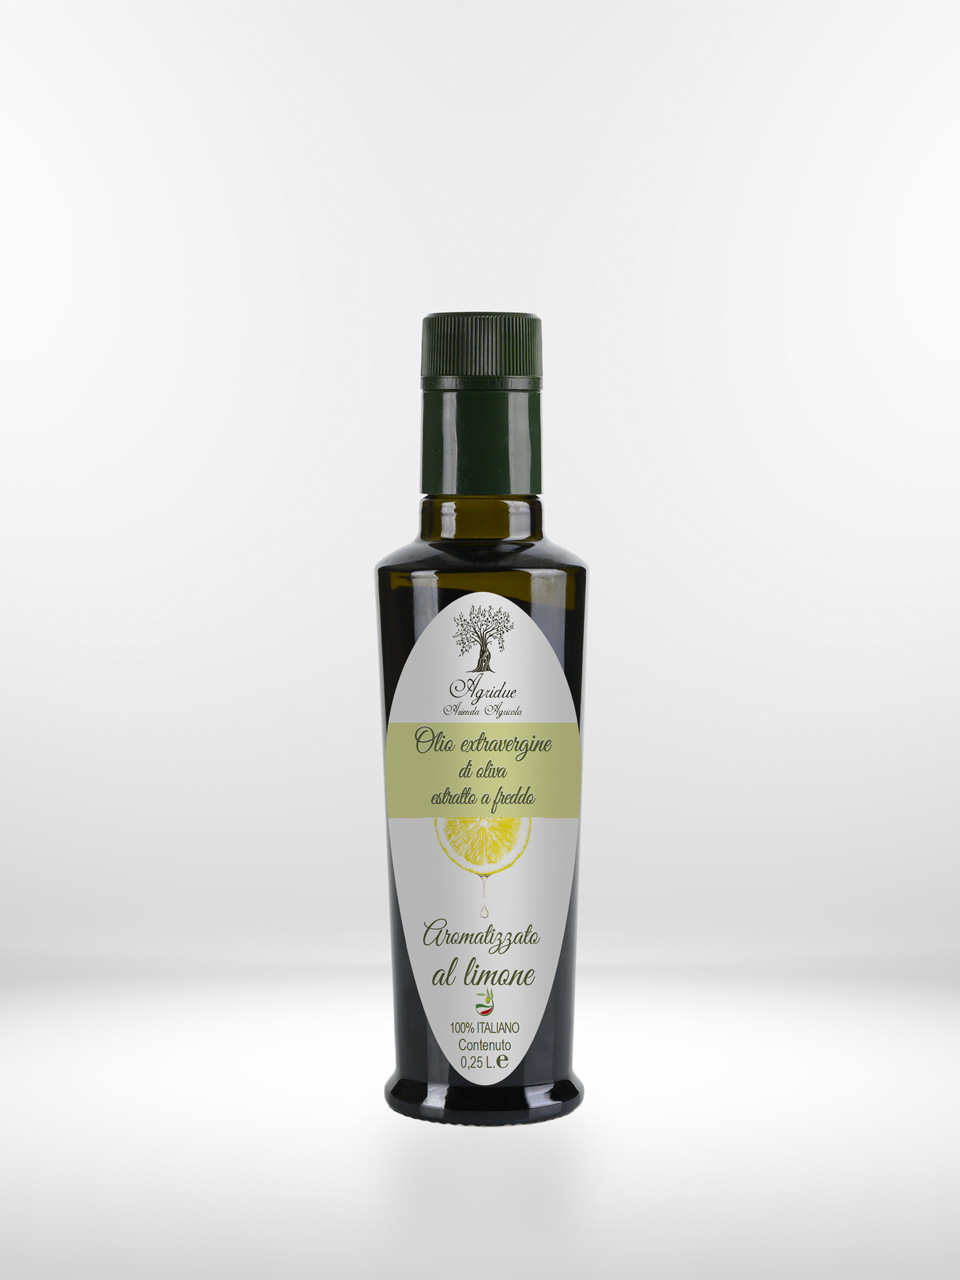 Una bottiglia di olio extravergine d'oliva su sfondo bianco. Olio aromatizzato al limone, fresco mediterraneo.